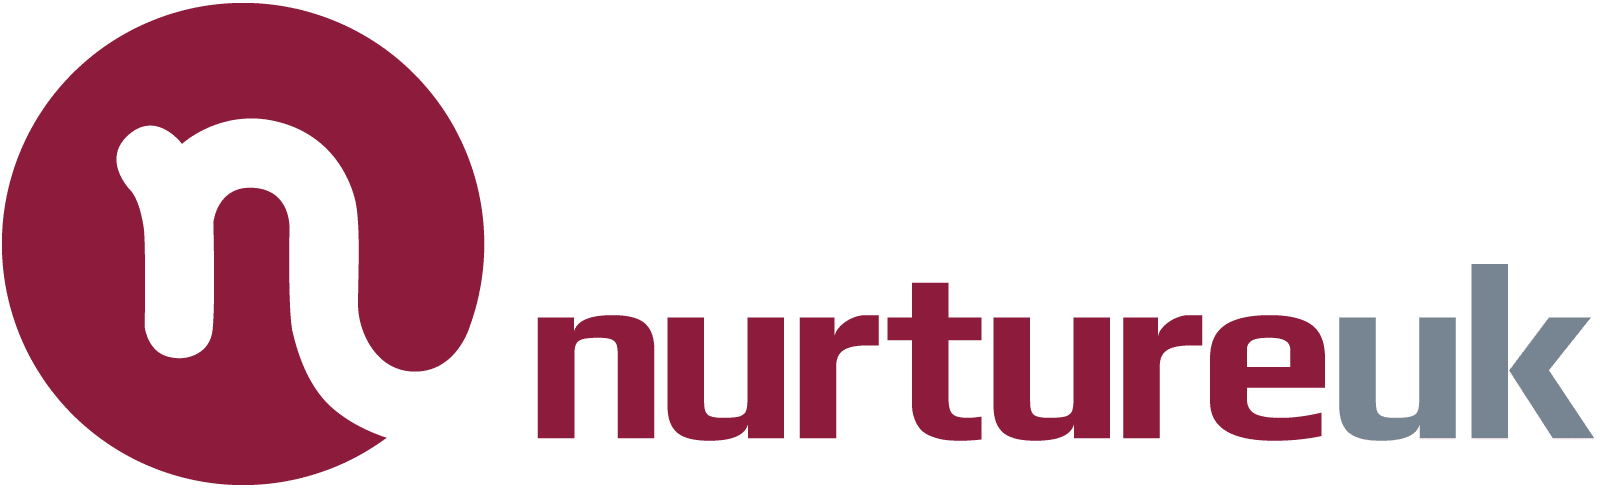 nurture Uk logo